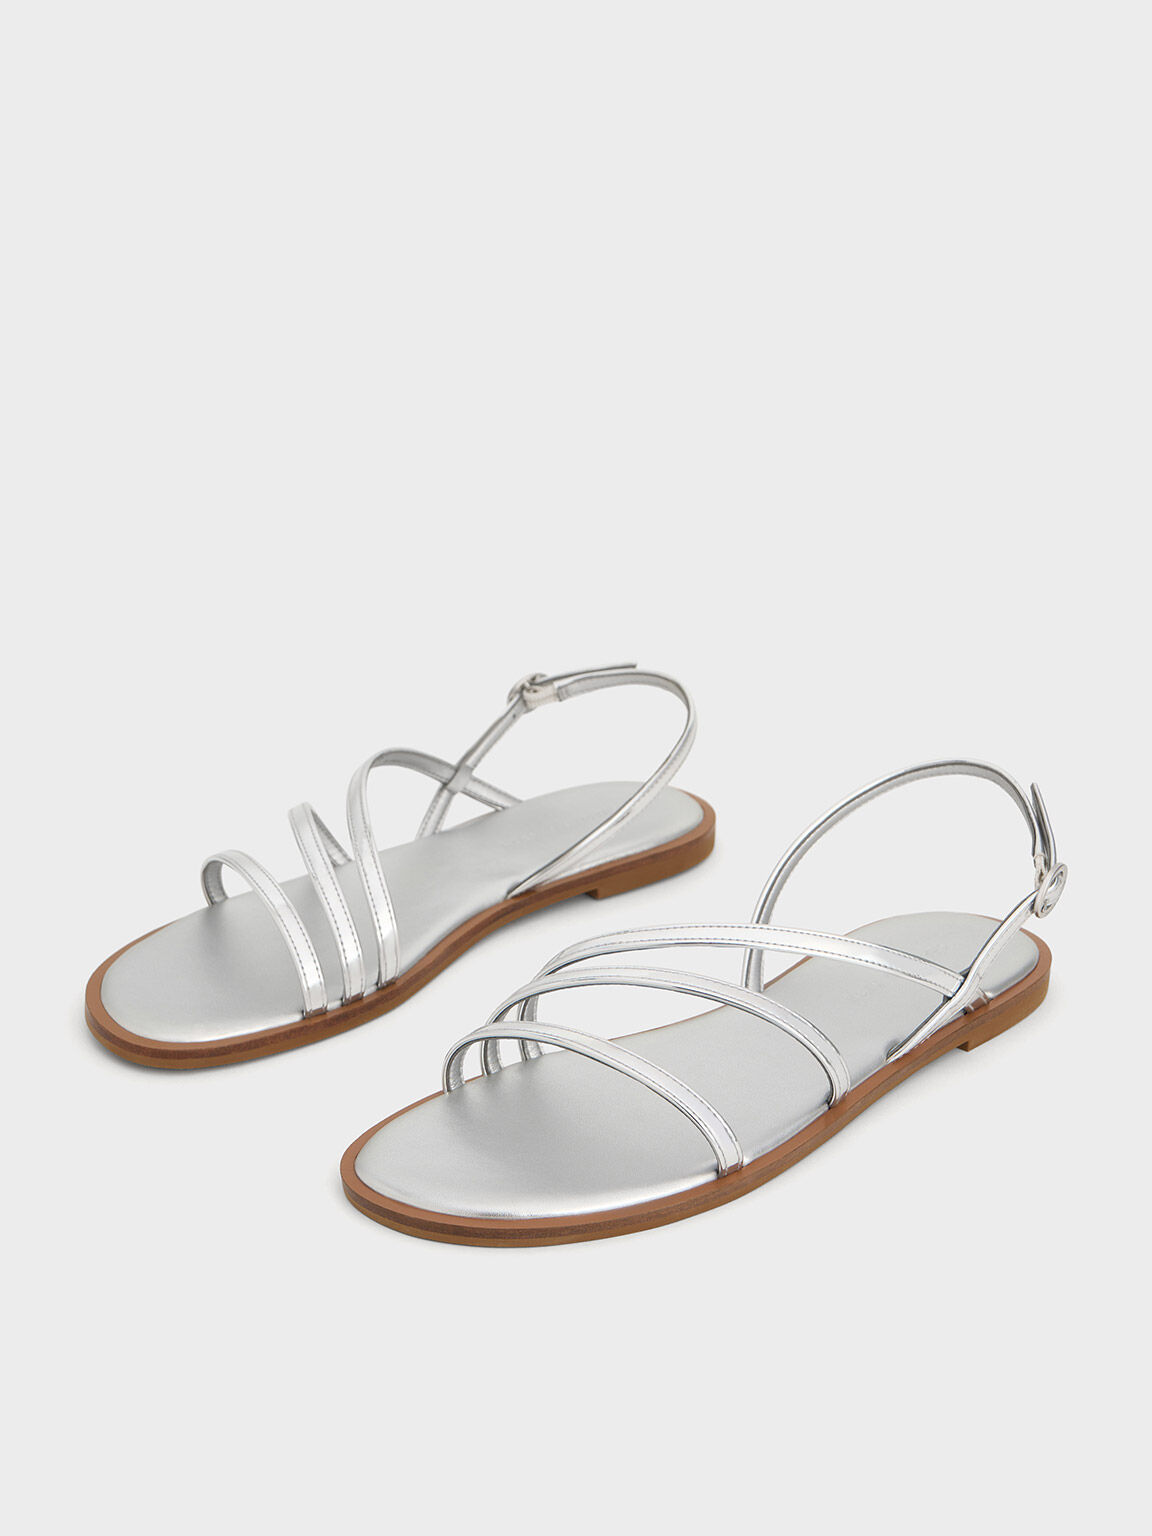 Barefoot Sandals - Be Lenka Grace - Ivory White | Be Lenka